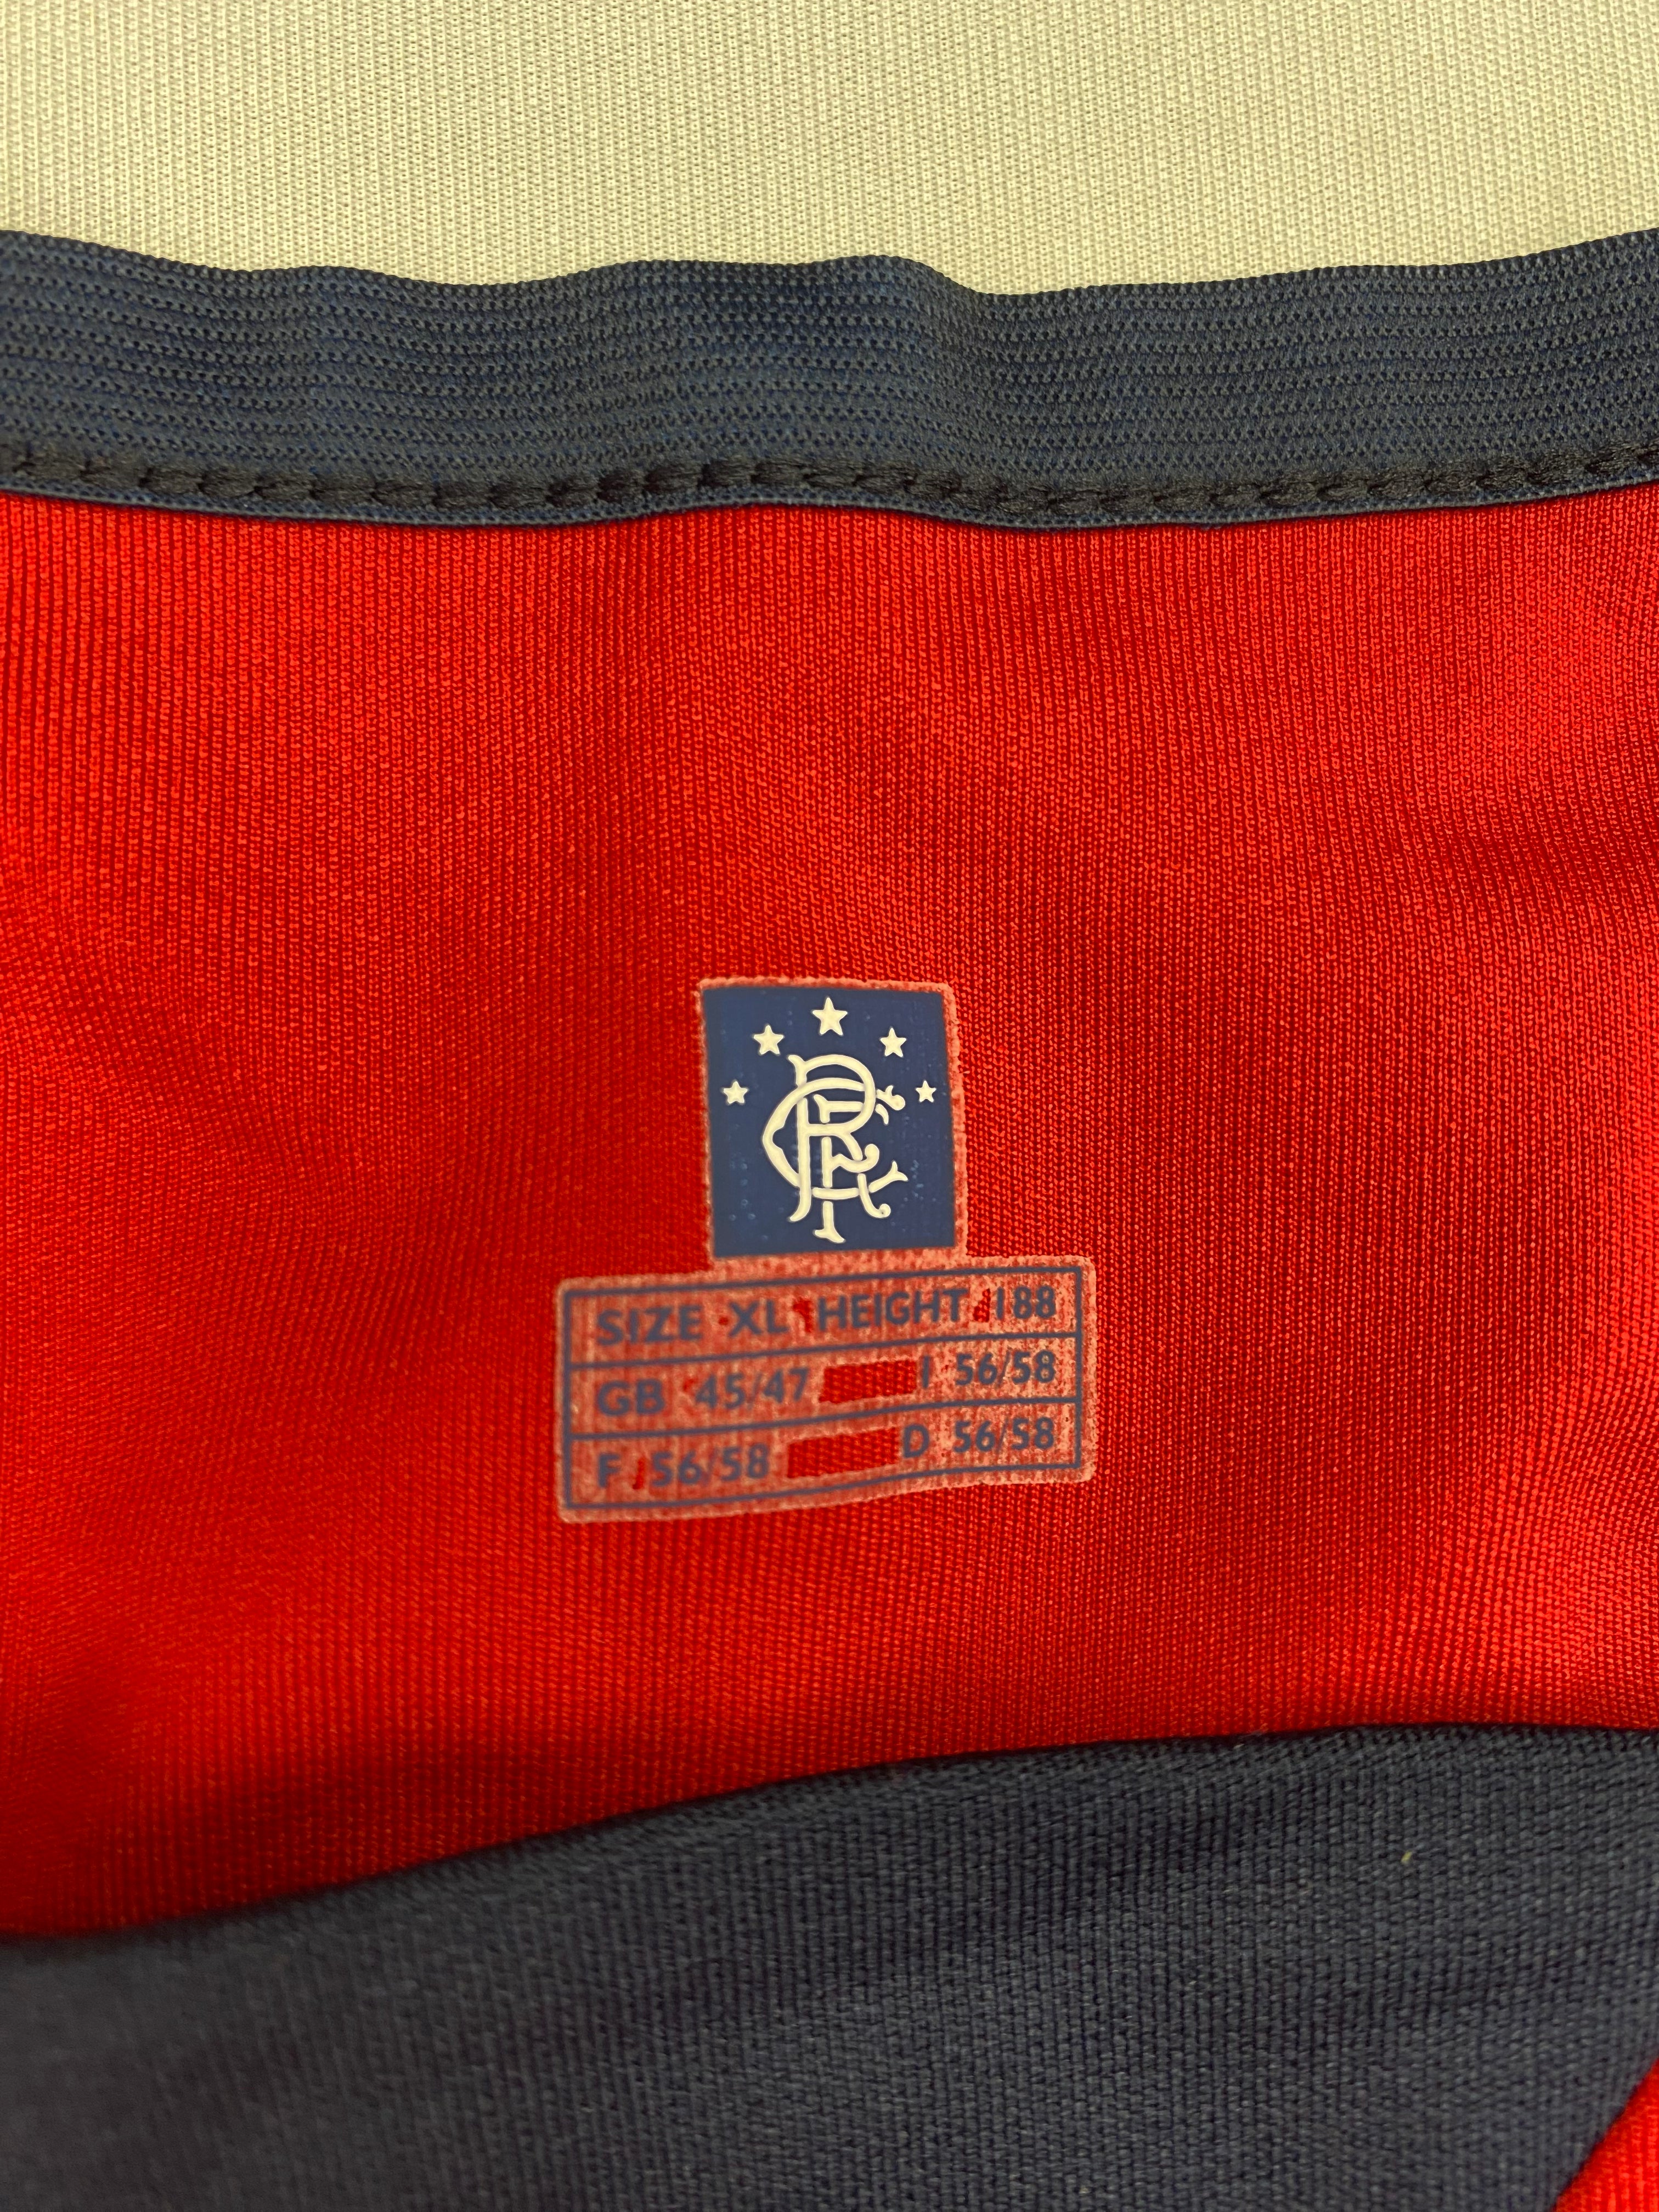 2004/05 Tercera camiseta de los Rangers (XL) 9/10